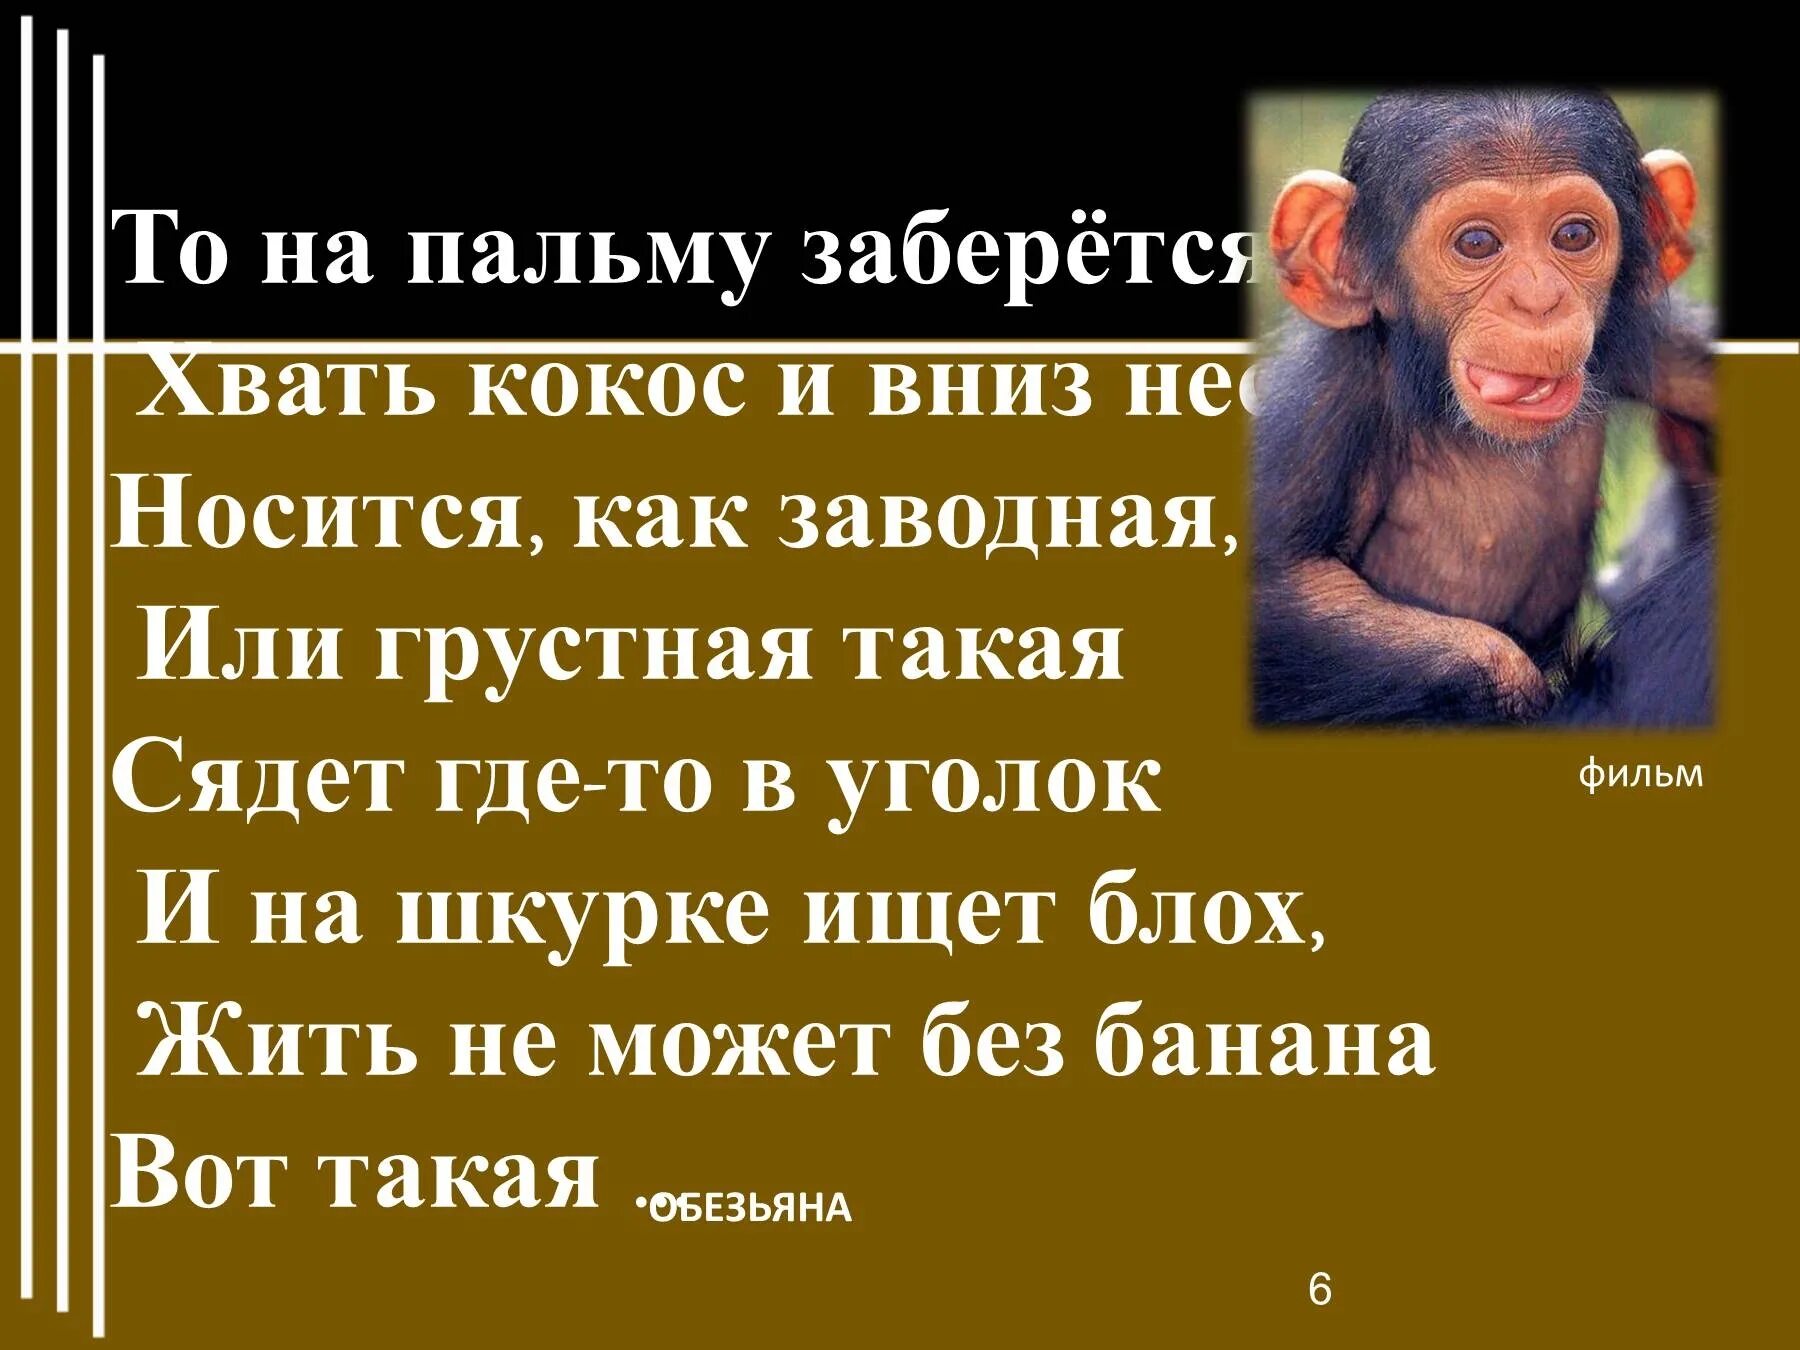 Про обезьянку 3 класс. Житков про обезьянку. Предложение про обезьяну. Рисунок к рассказу про обезьянку. Обезьяна из рассказа про обезьянку